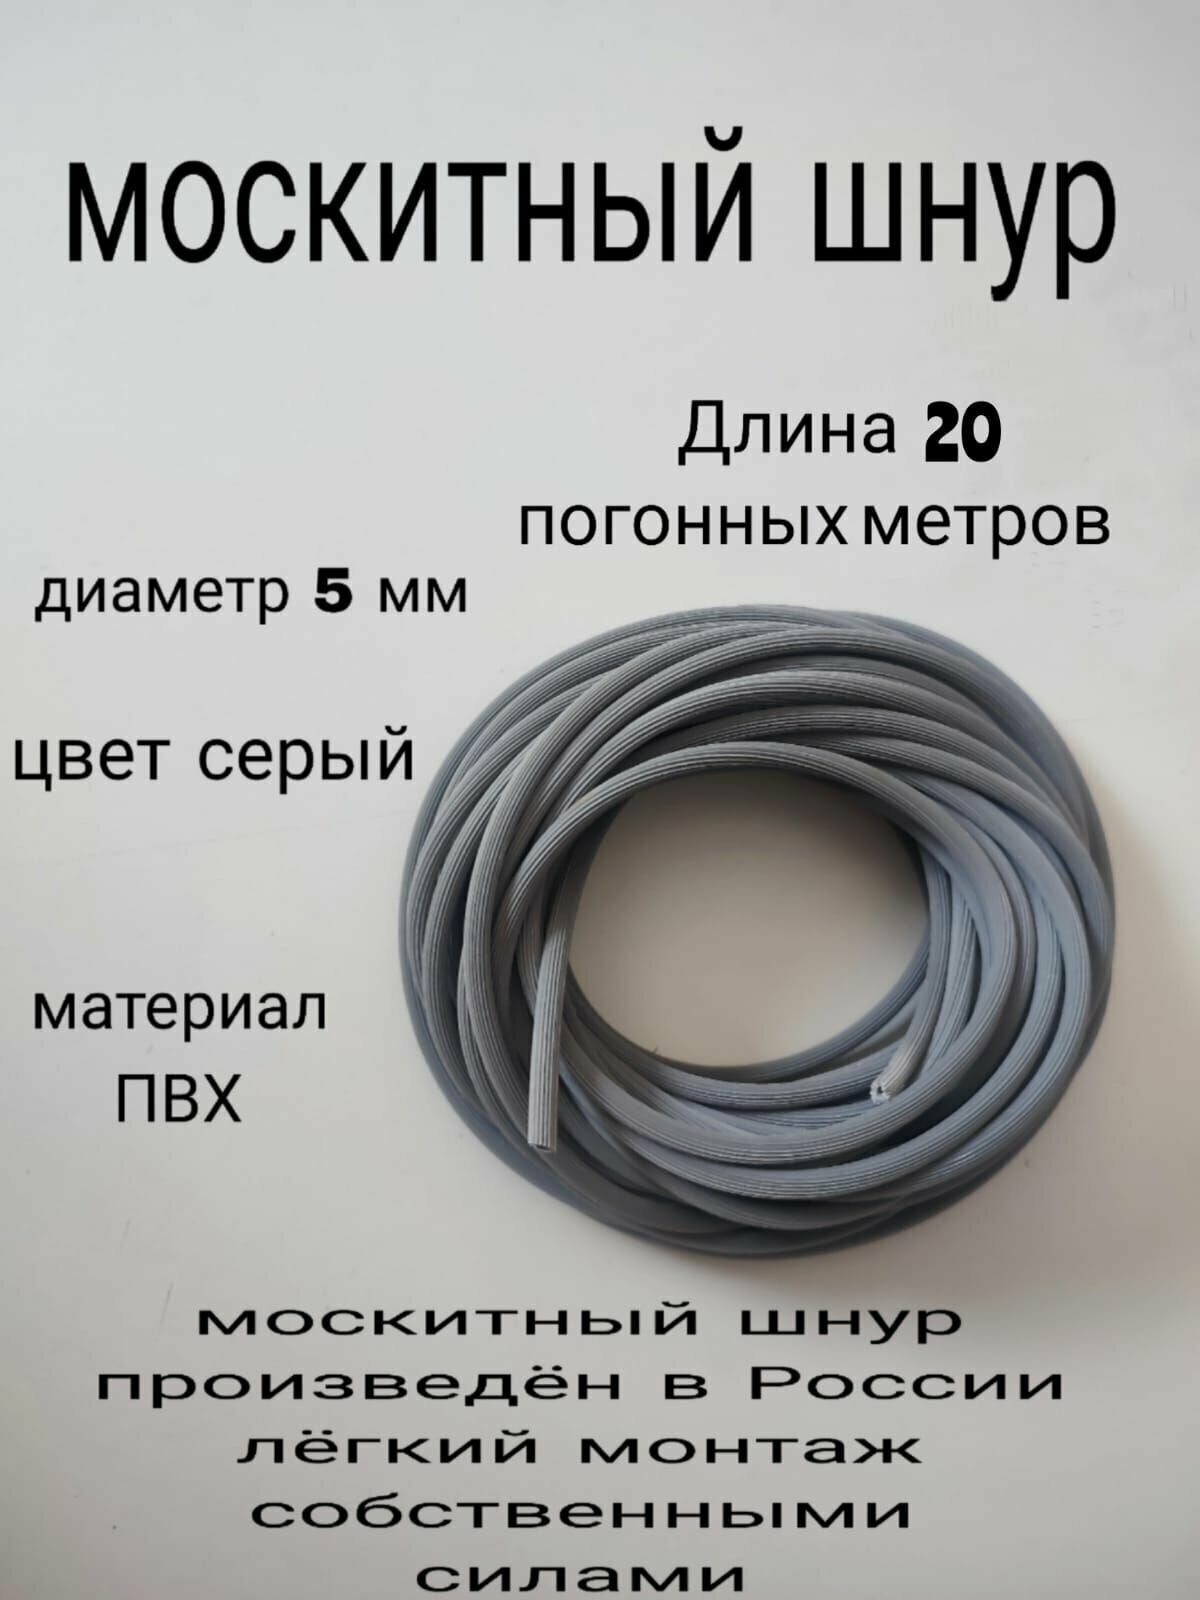 Шнур фиксирующий для москитной сетки 20 метров, диаметр 5мм